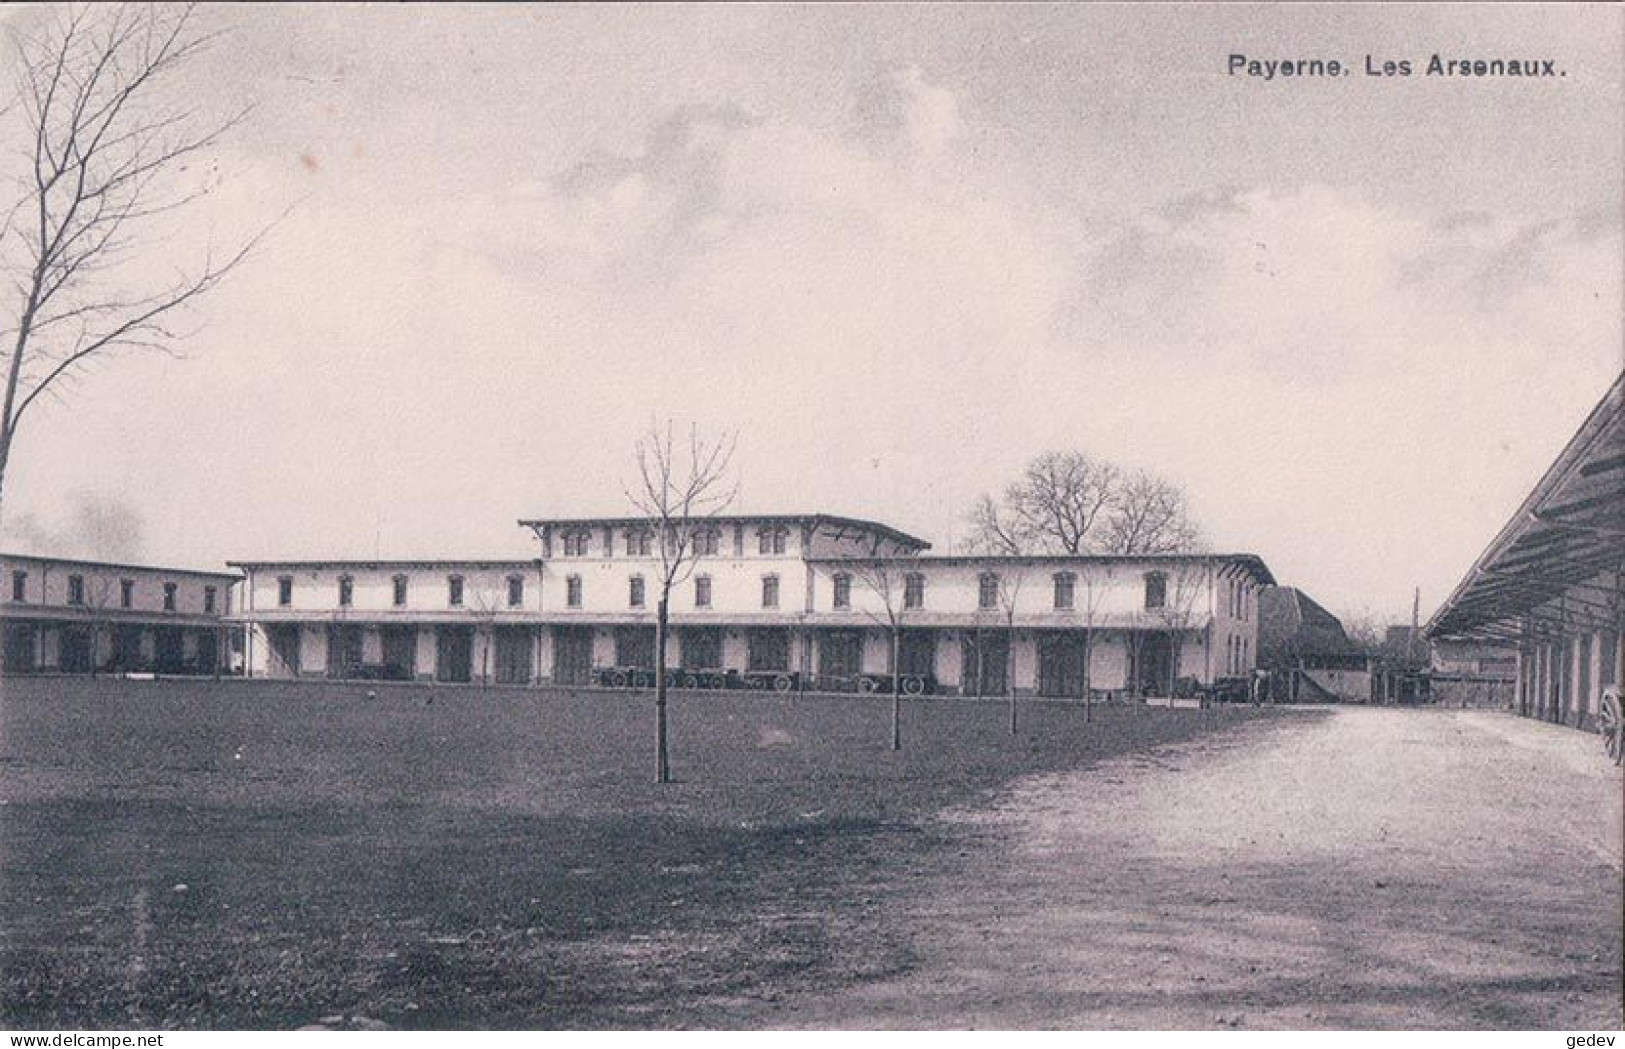 Armée Suisse, Payerne VD, Les Arsenaux (1985) - Barracks